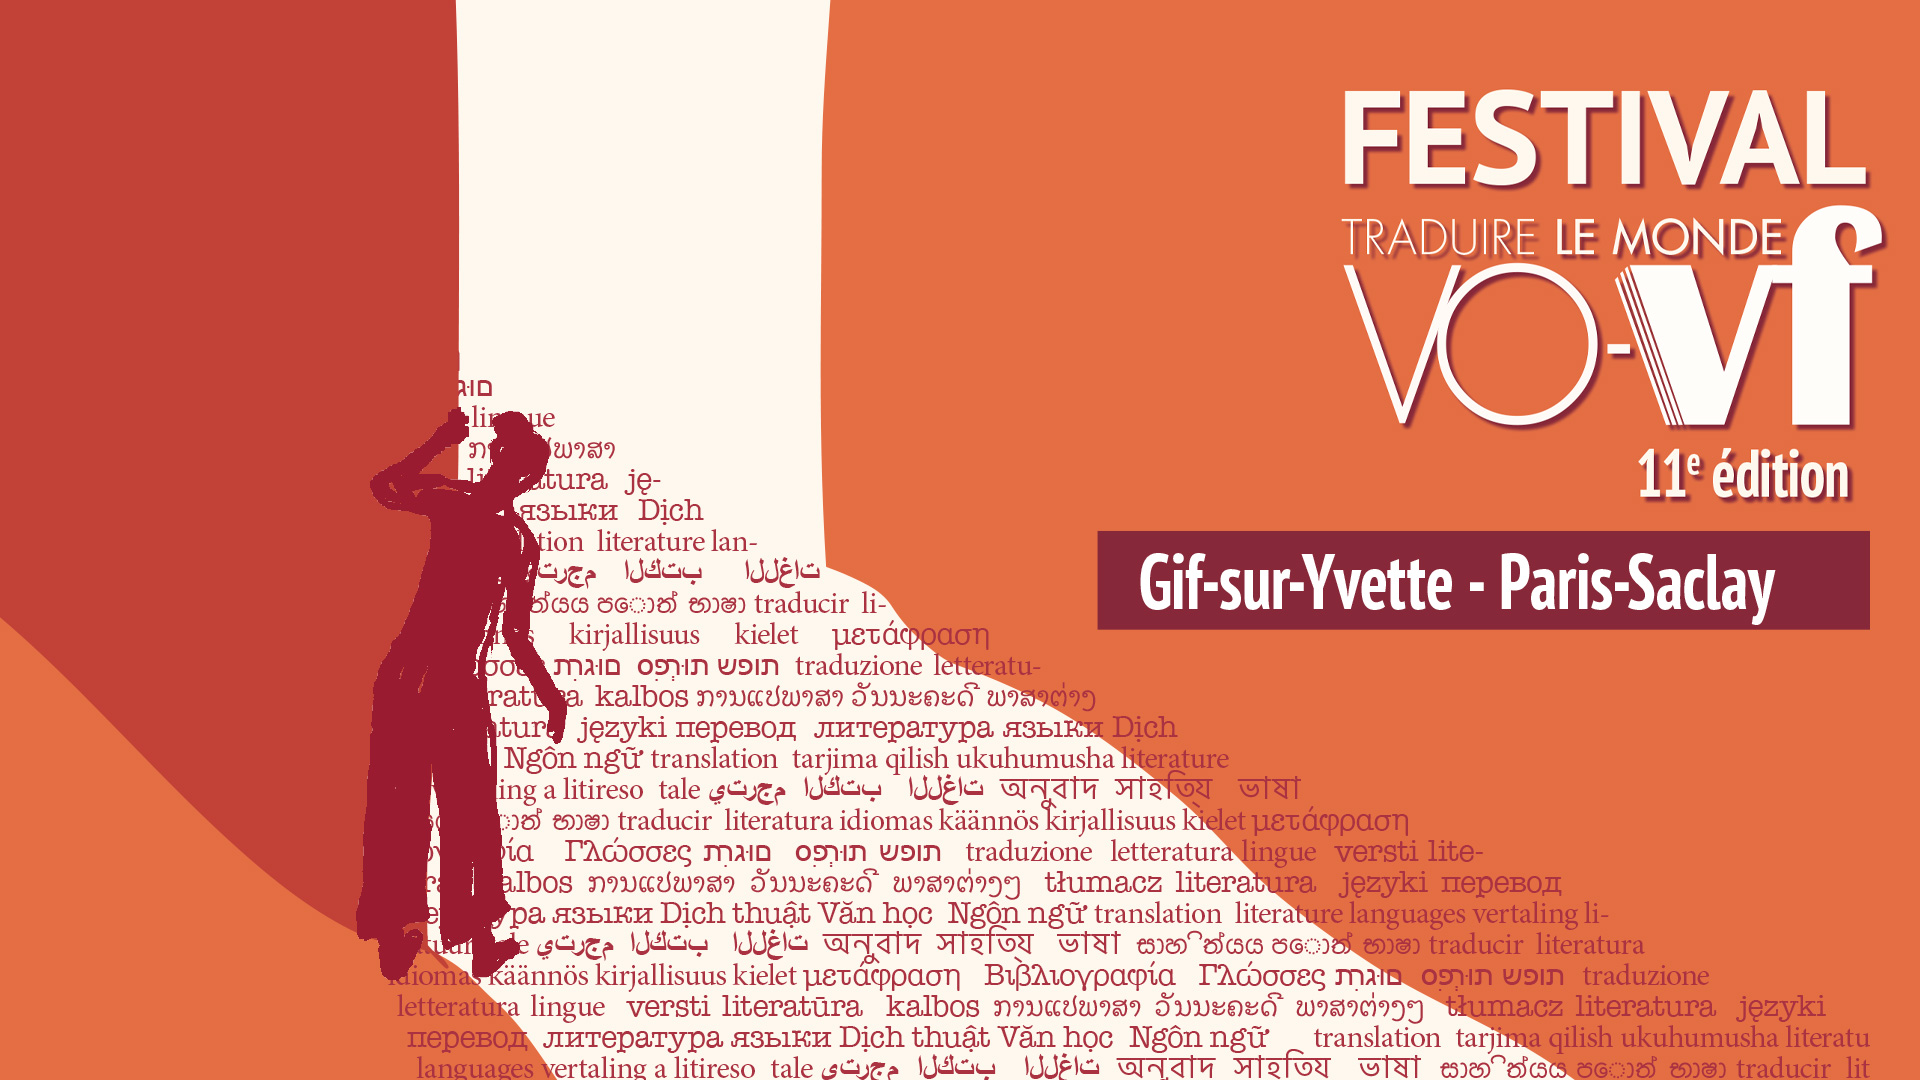 11e édition du festival Vo-Vf